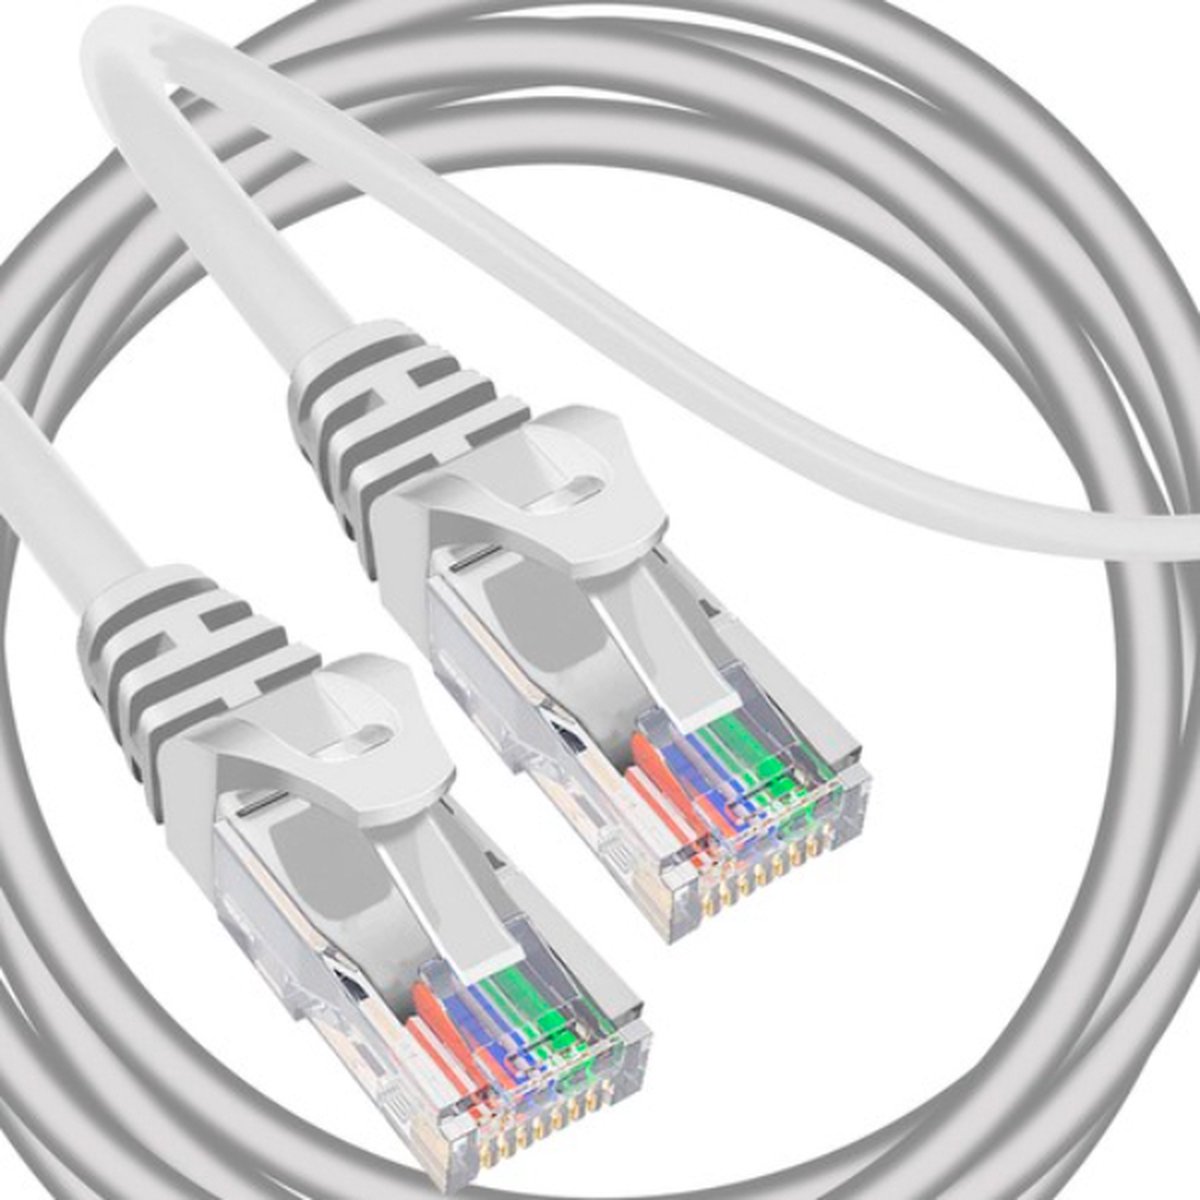 T.R. Goods - 5 meter LAN / Netwerkkabel / Internet kabel / UTP Kabel / CAT5